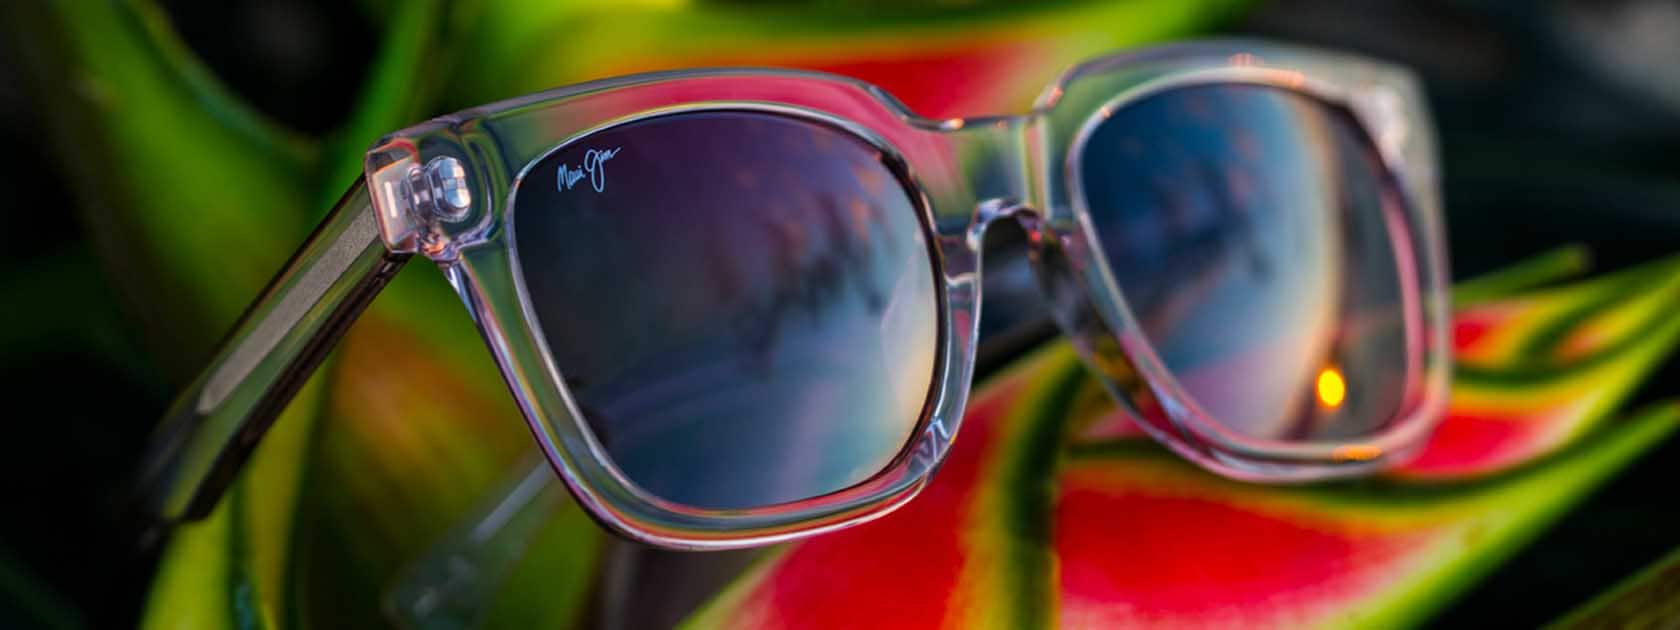 monture de lunettes de soleil transparente avec verres roses présentée sur feuilles tropicales rouges et vertes